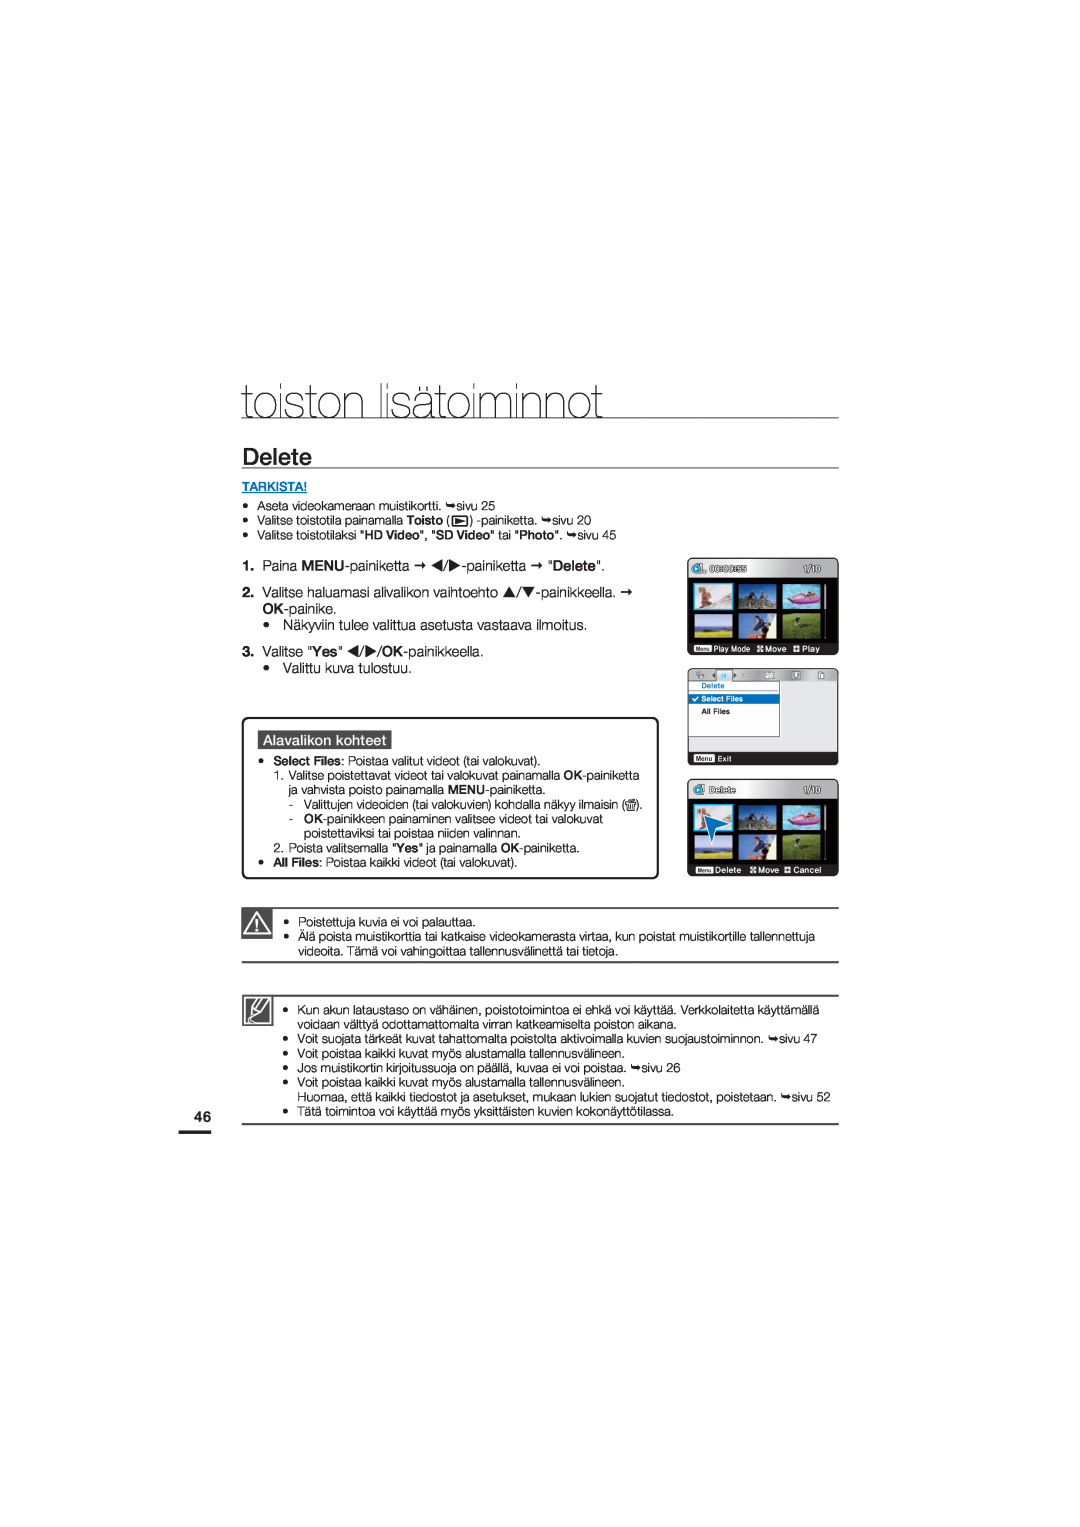 Samsung HMX-U20BP/EDC manual Delete, toiston lisätoiminnot, Alavalikon kohteet, Tarkista, Fmfuf 